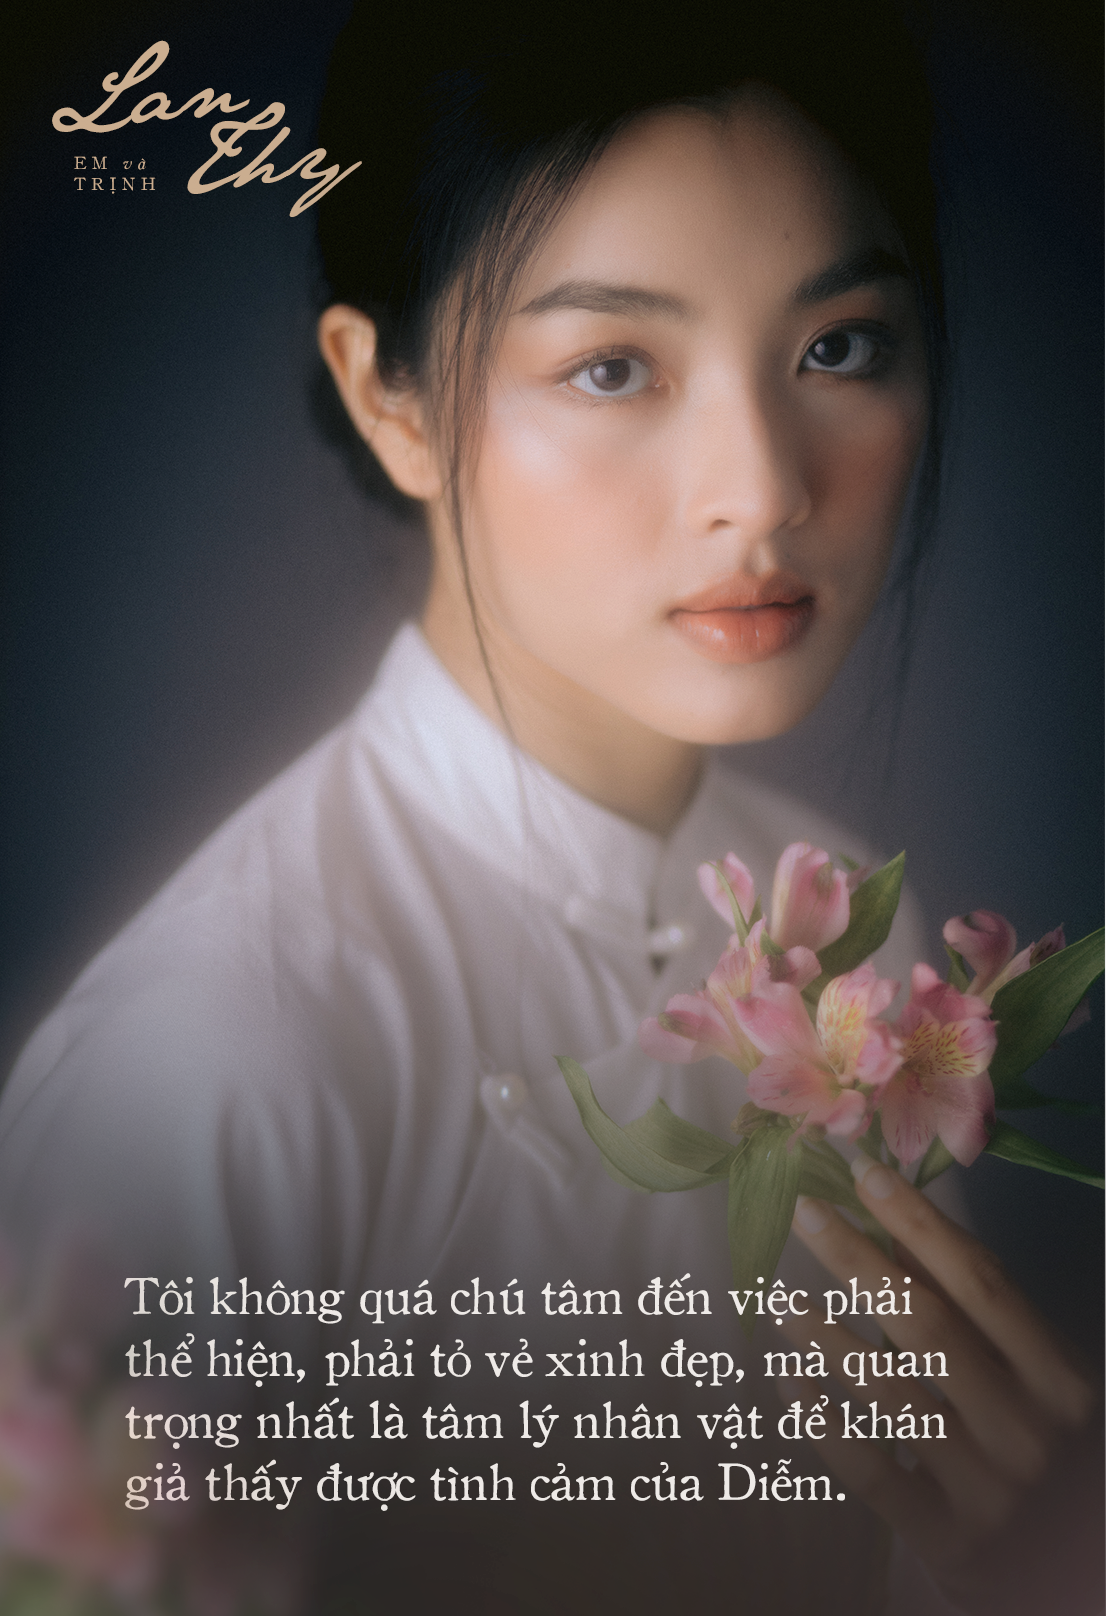 Lan Thy: Nếu được chọn, tôi sẽ làm tri kỷ của Trịnh Công Sơn và yêu một người như Avin Lu - Ảnh 3.